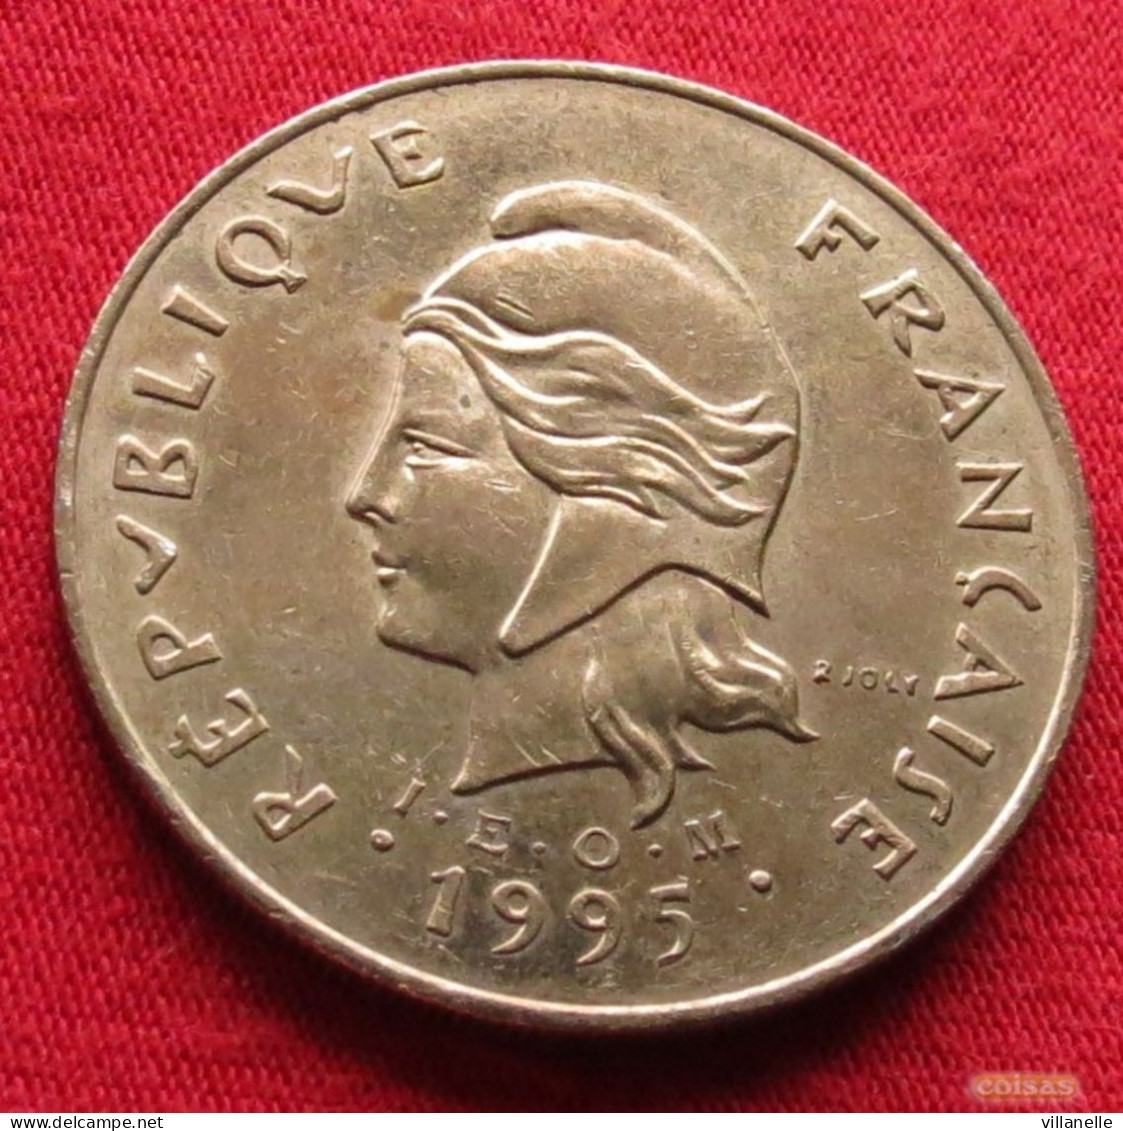 French Polynesia 100 Francs 1995 KM# 14 *V2T Polynesie Polinesia - Polinesia Francese